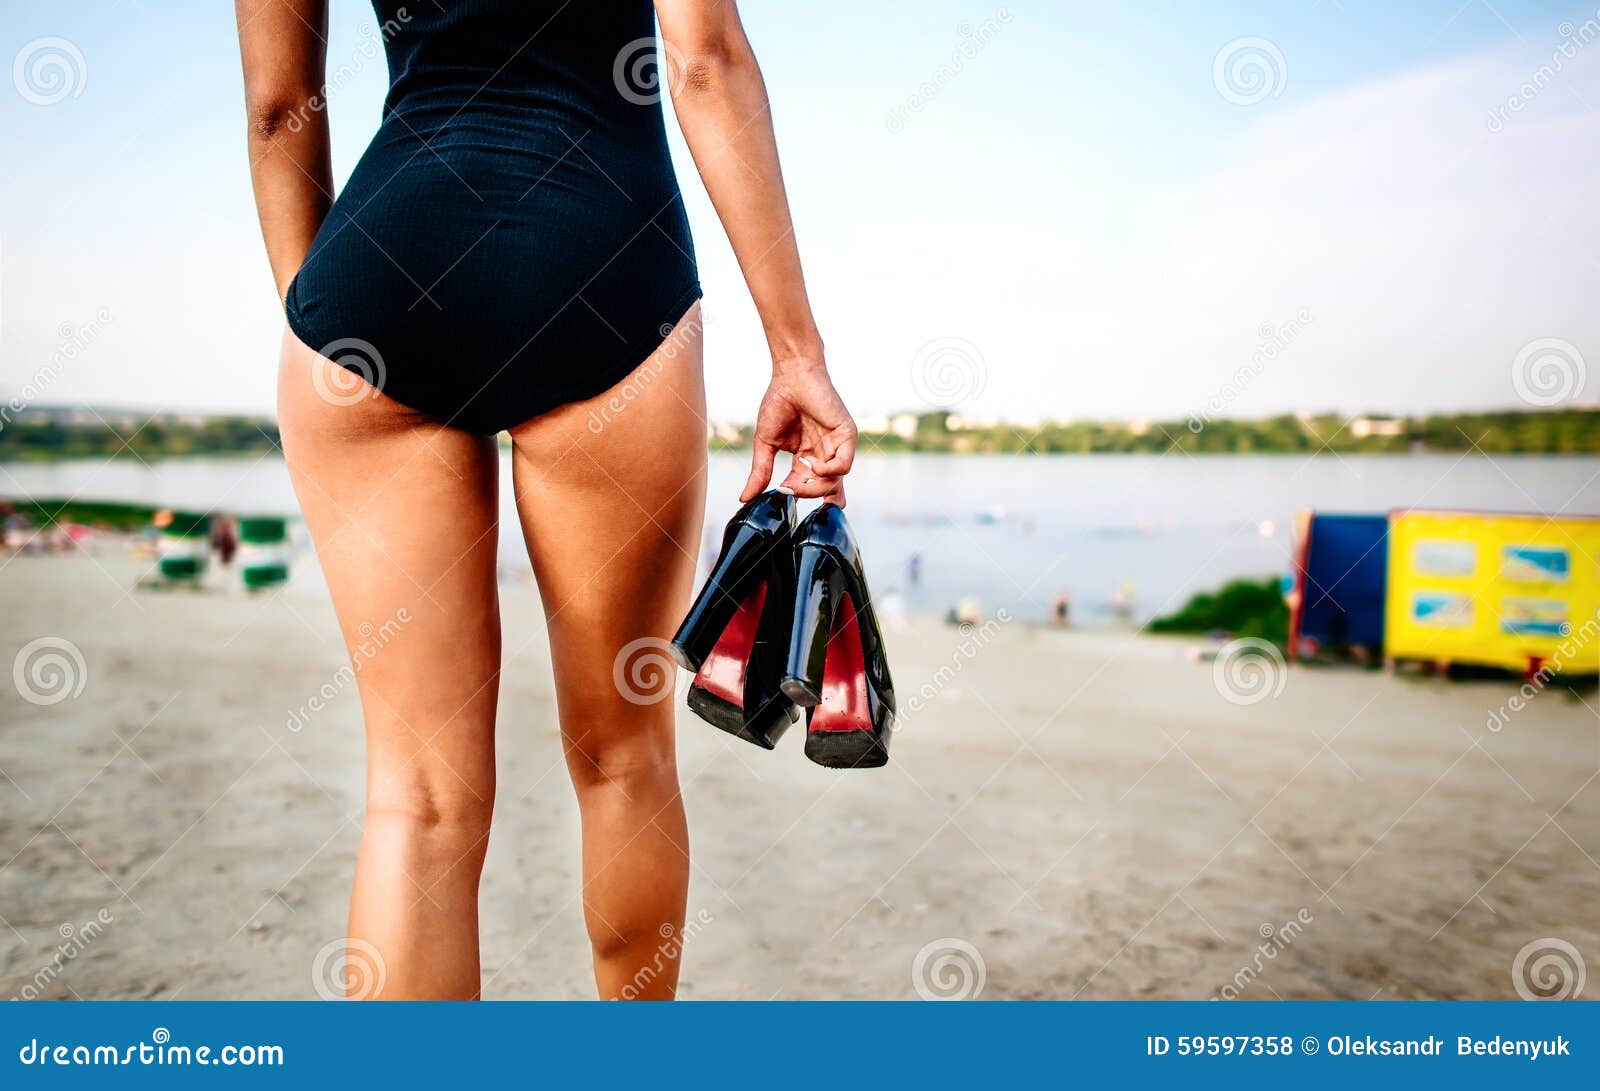 Mujeres Bonitas Jovenes En La Playa En Traje De Baño Negro Foto de archivo - Imagen talones: